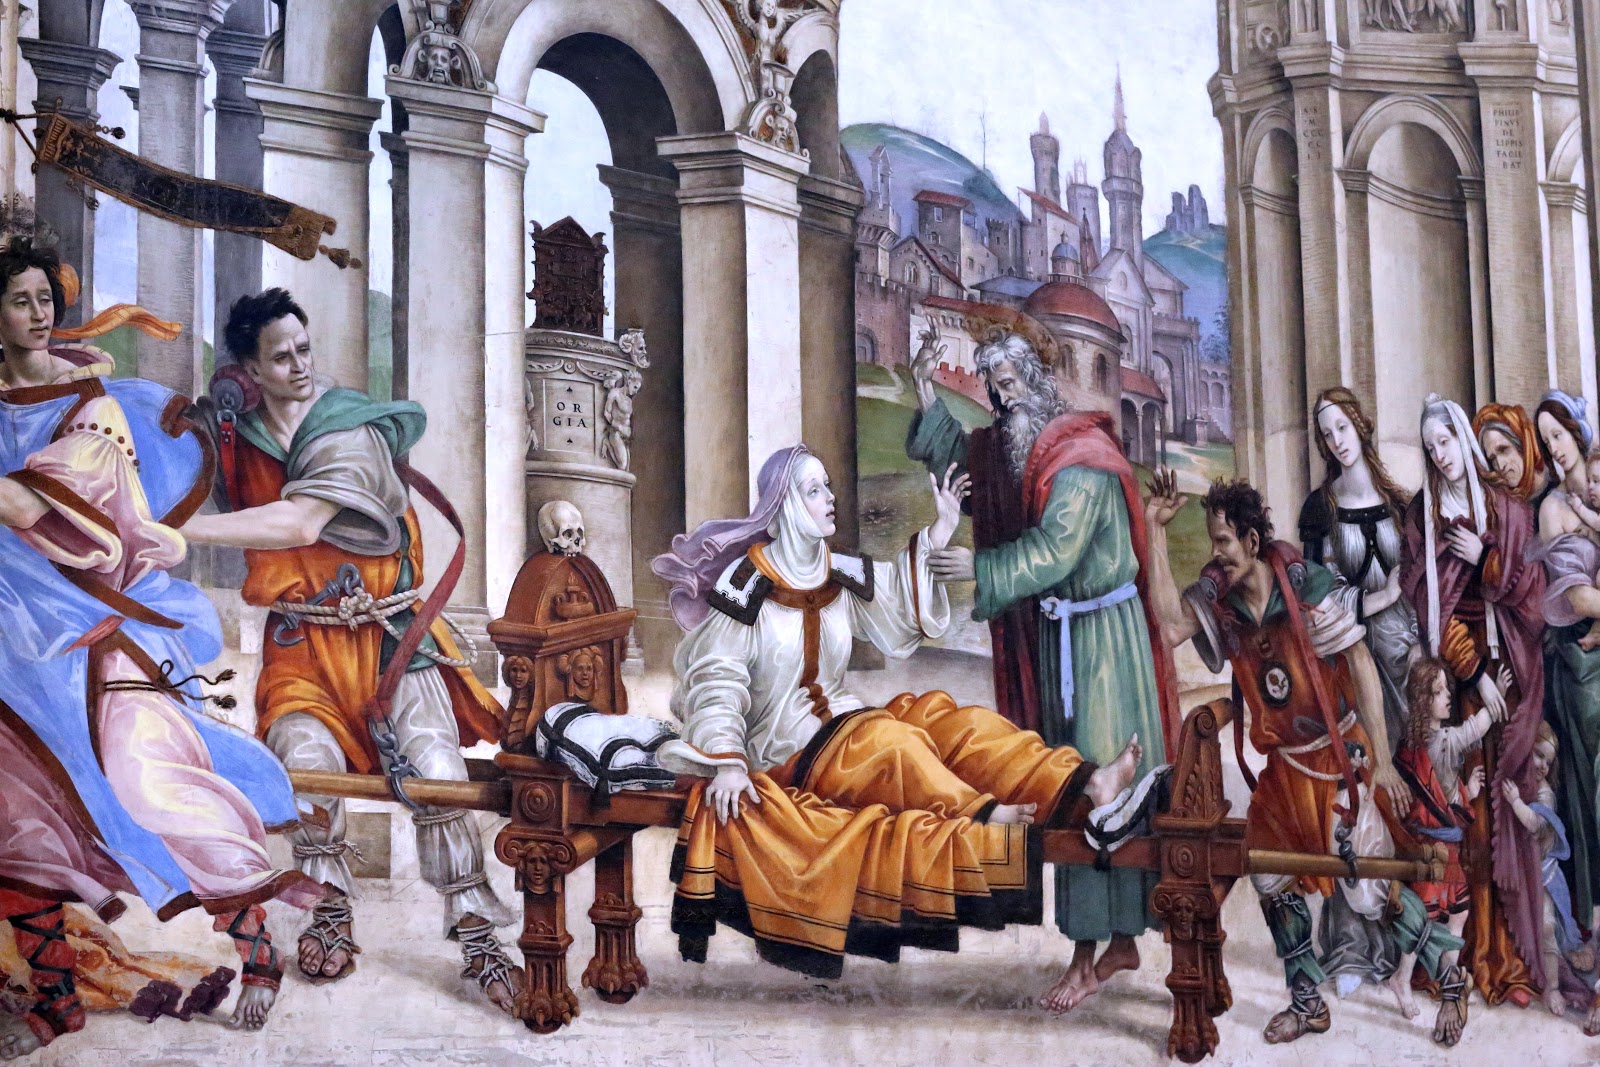 Filippino+Lippi-1457-1504 (34).jpg